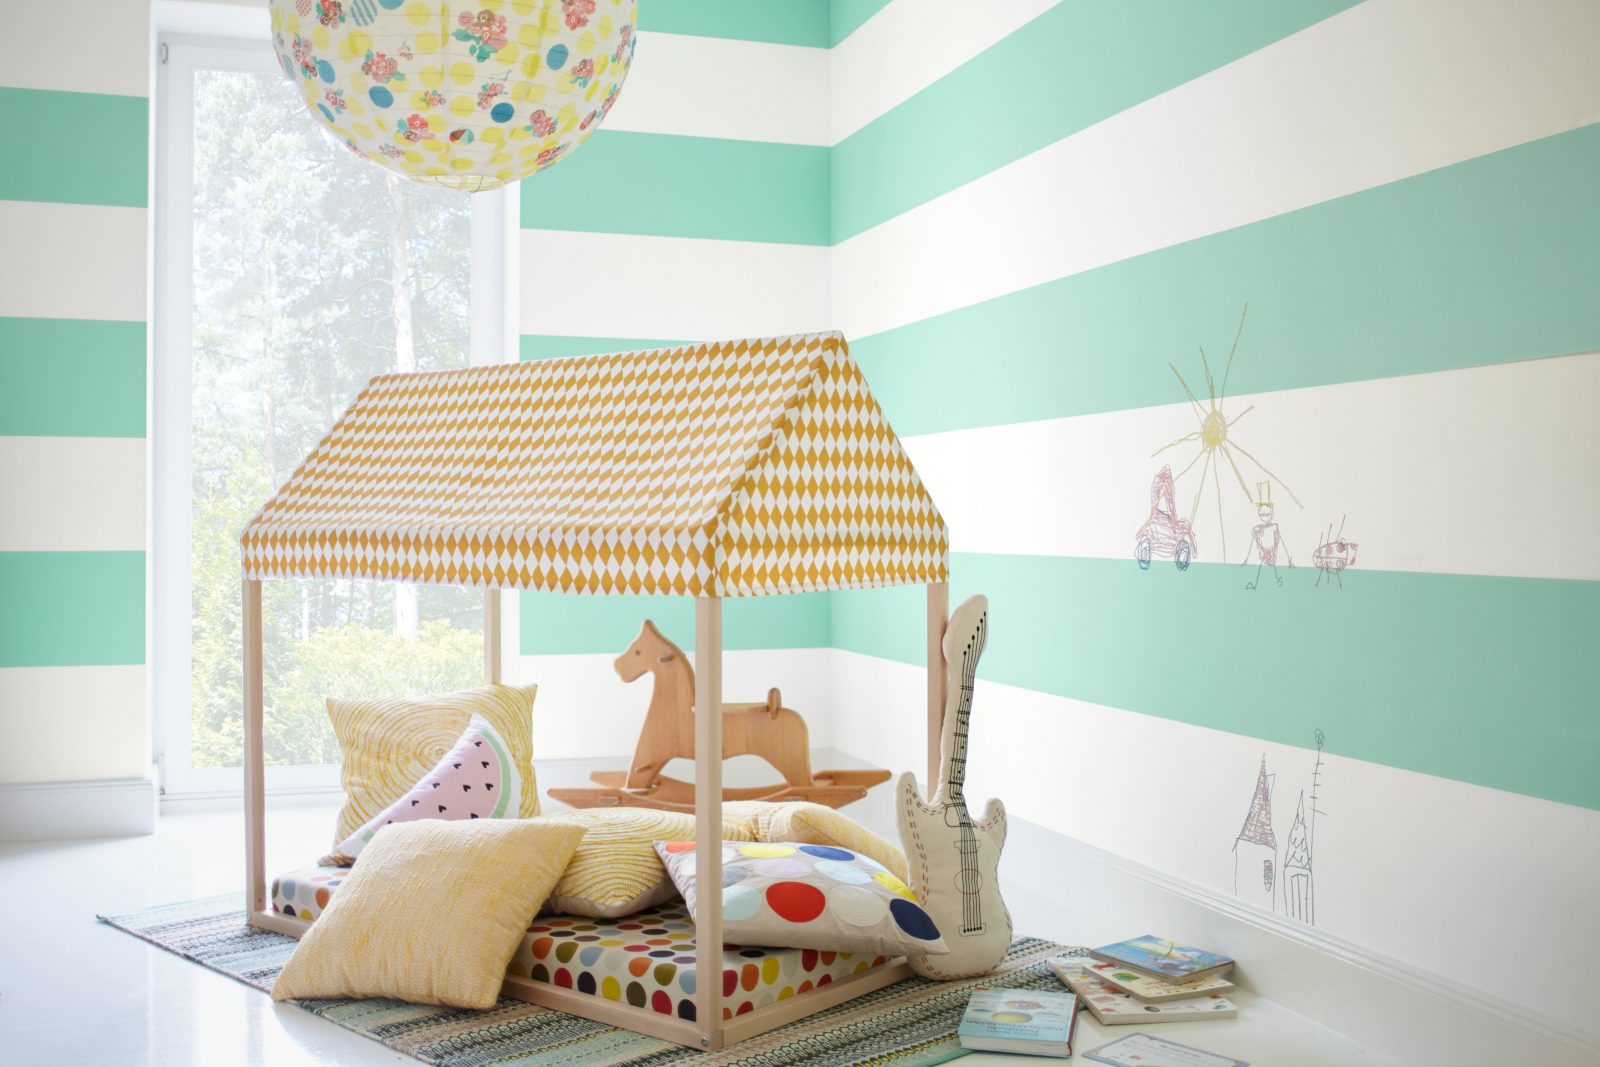 Wandgestaltung In Babyzimmer Und Kinderzimmer von Wandgestaltung Kinderzimmer Mit Farbe Bild